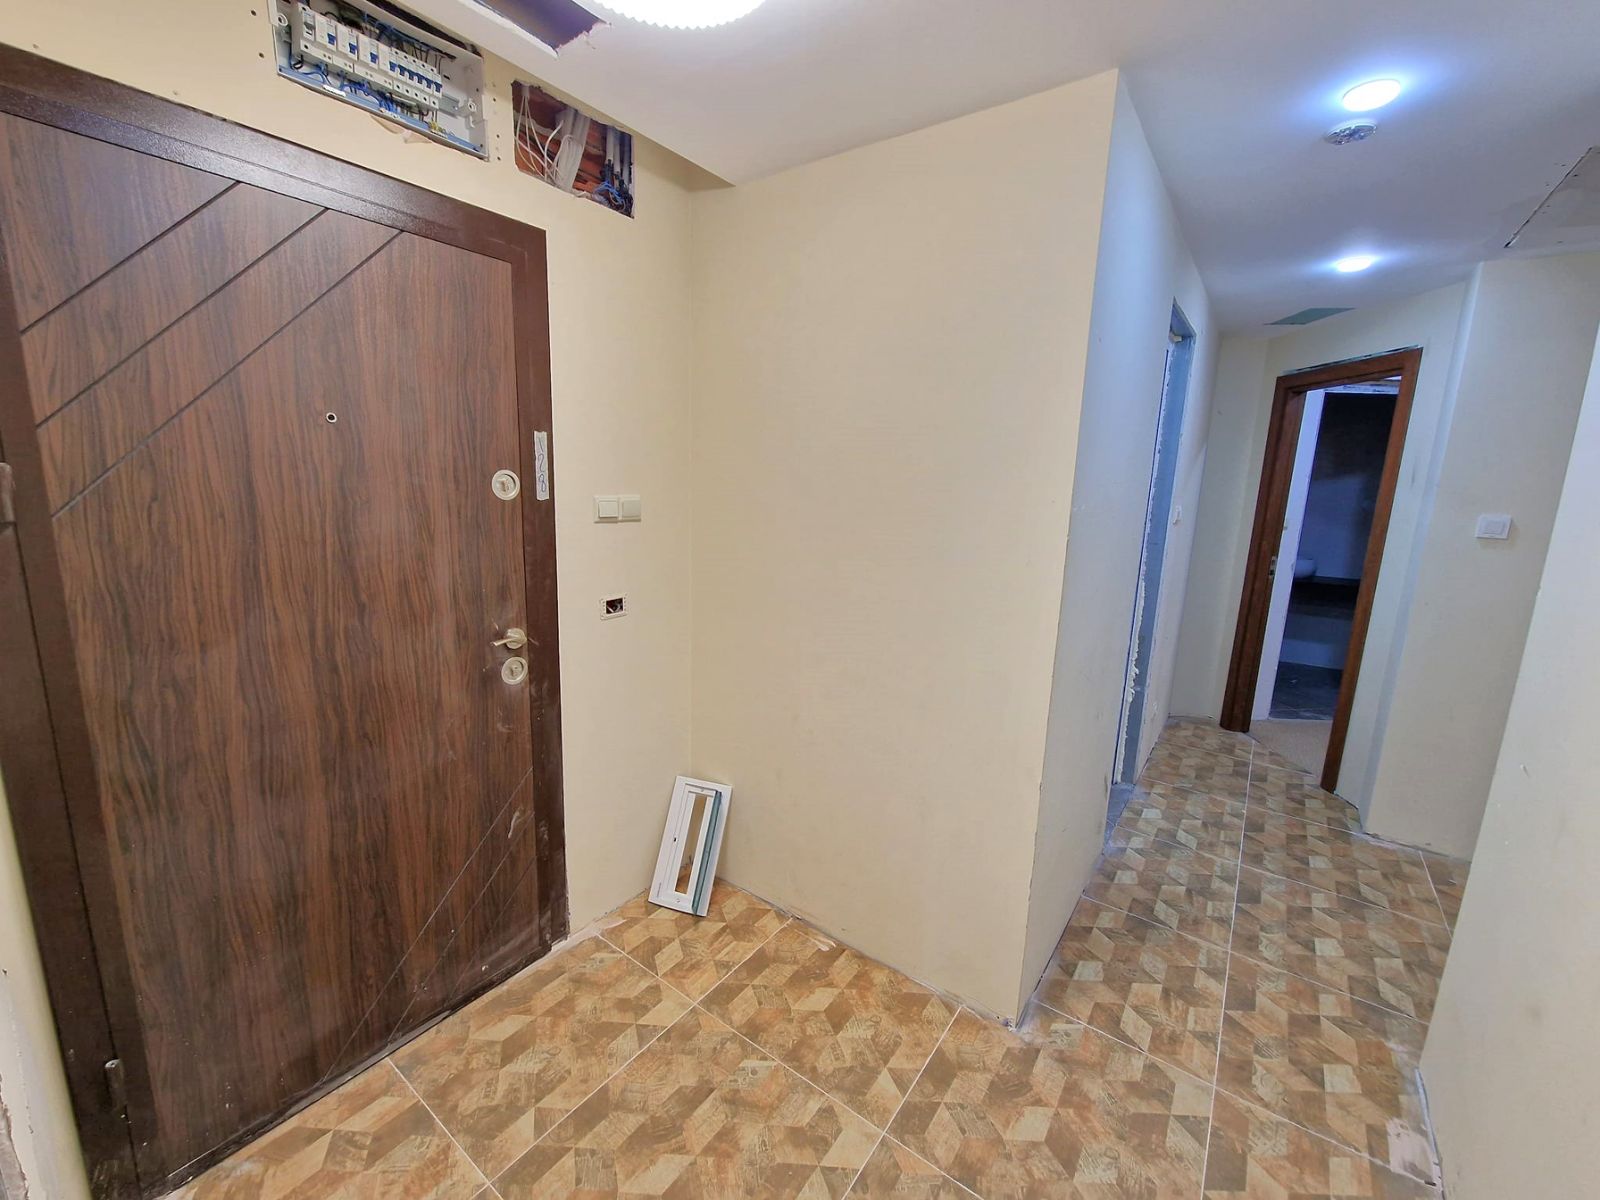 Банско: Тристаен апартамент за продажба в жилищна сграда с ниска такса